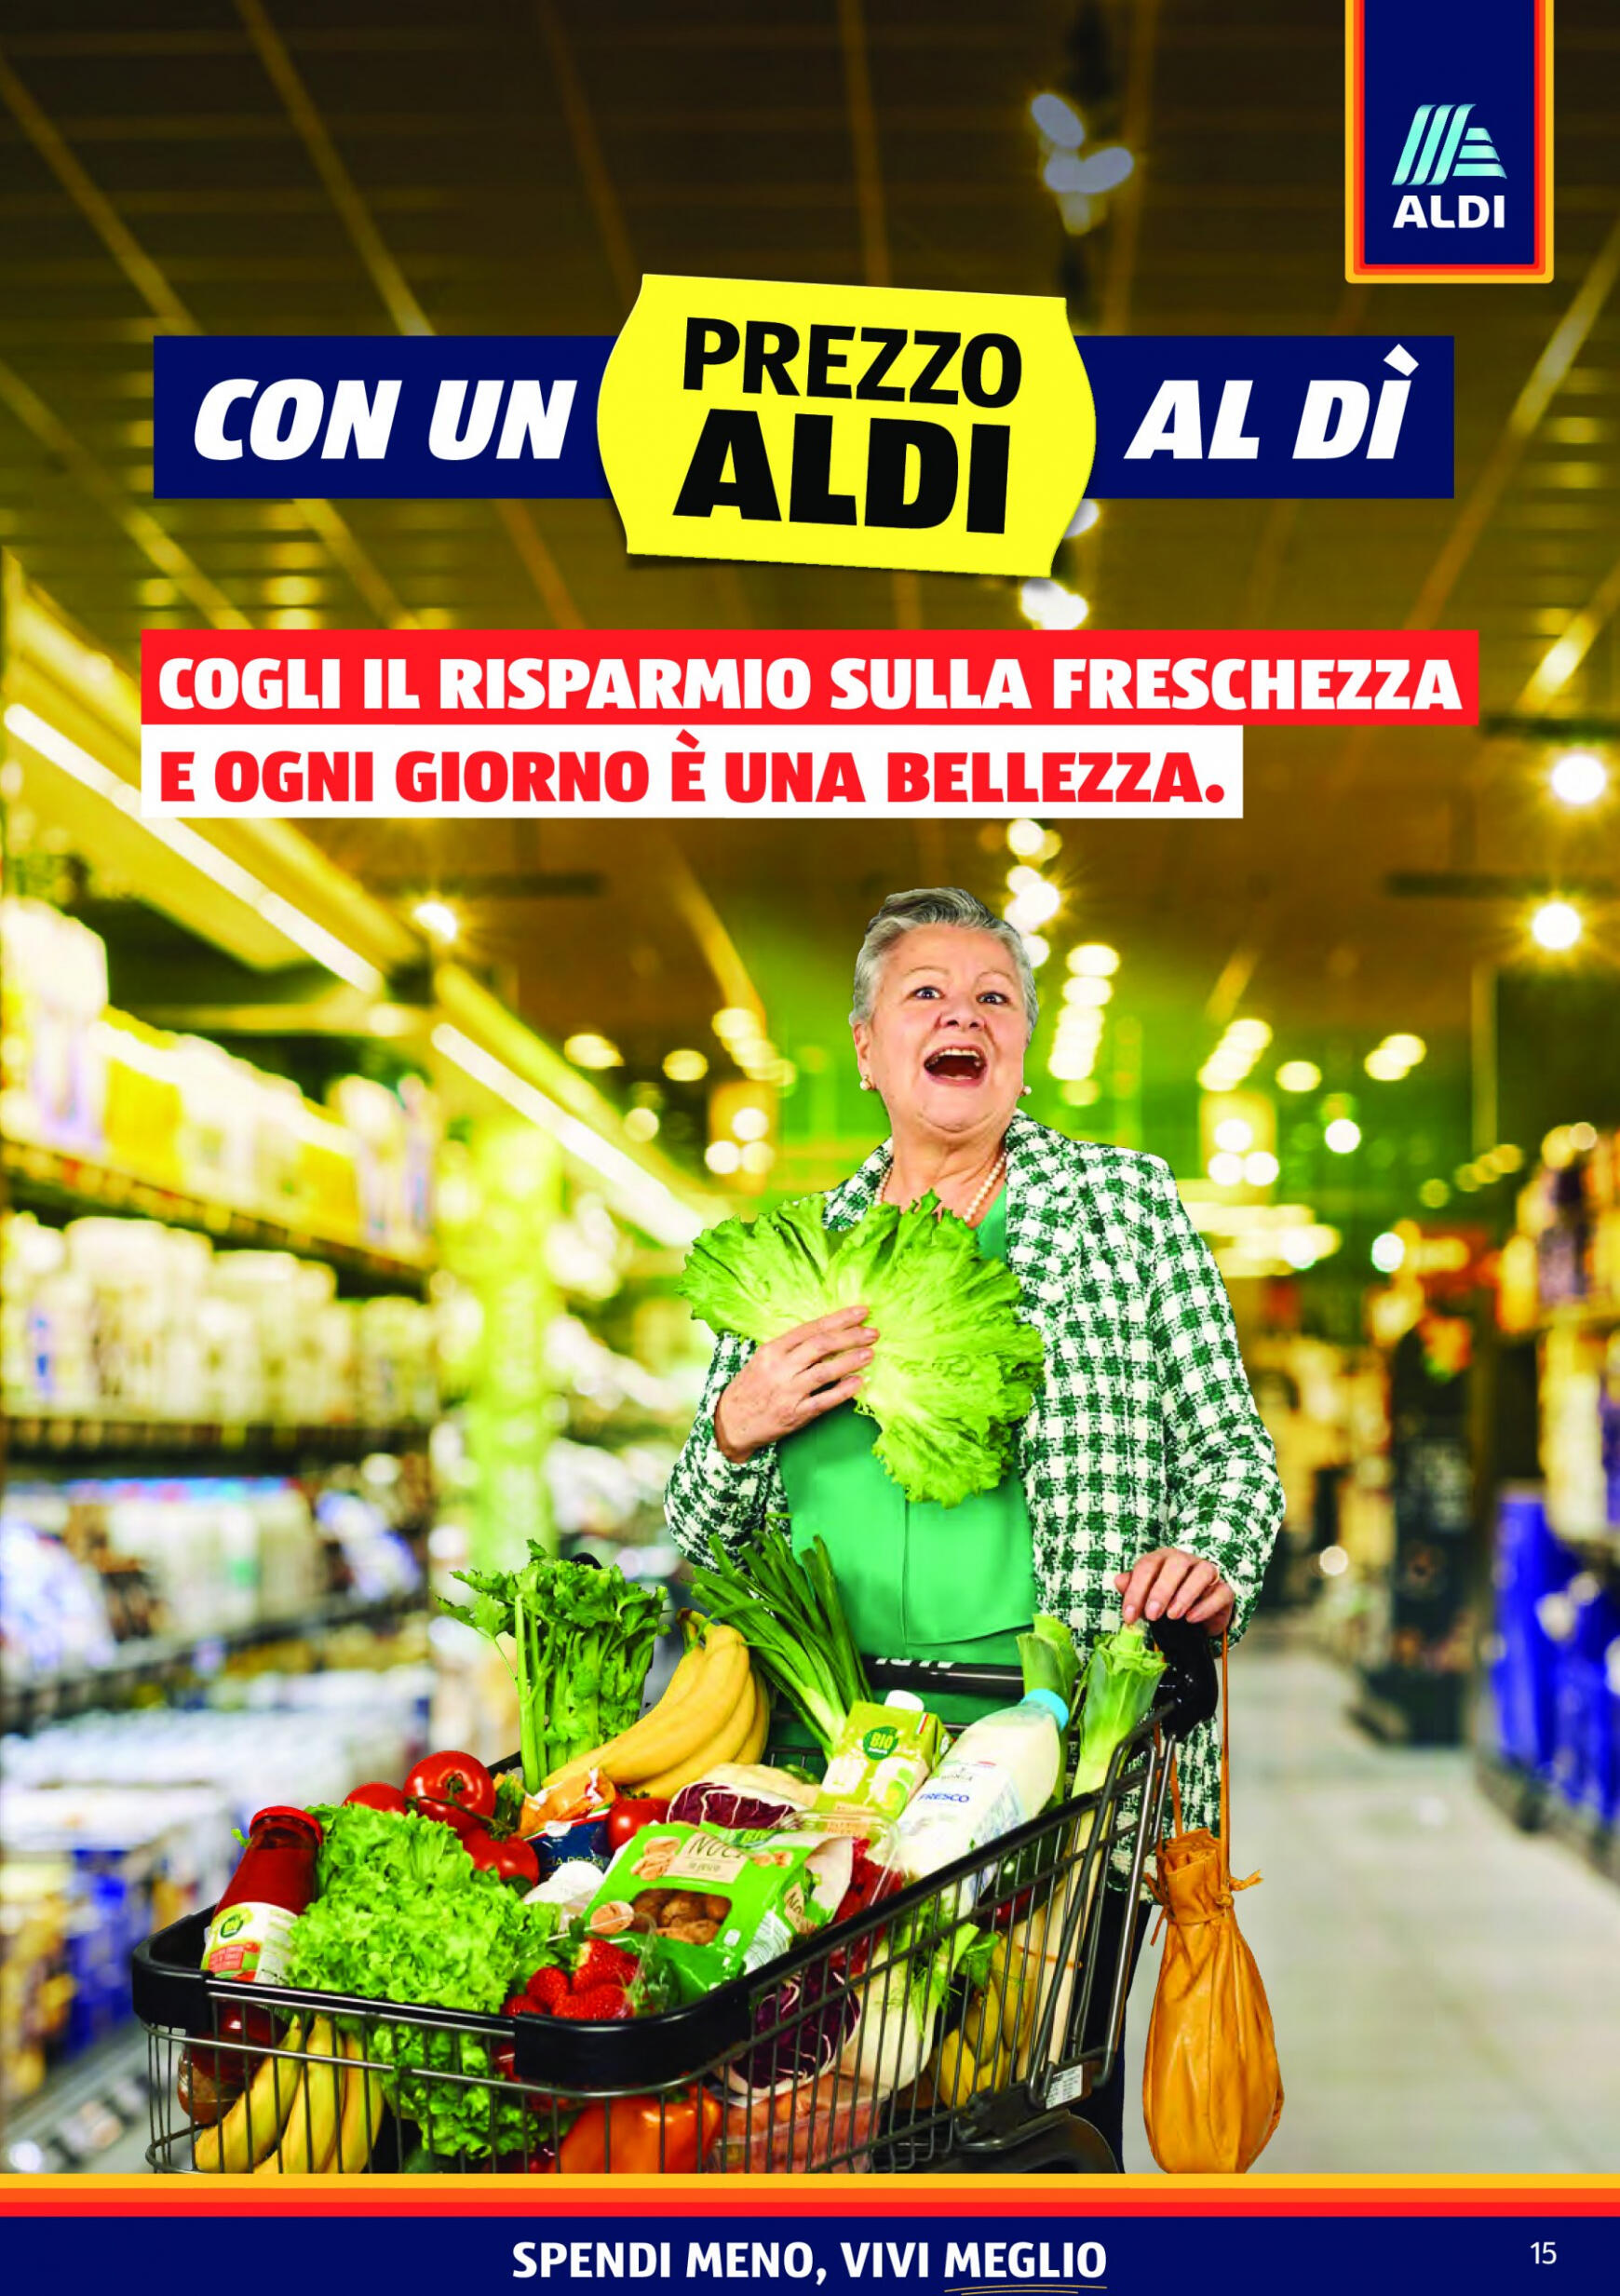 aldi - Nuovo volantino ALDI 29.04. - 05.05. - page: 15